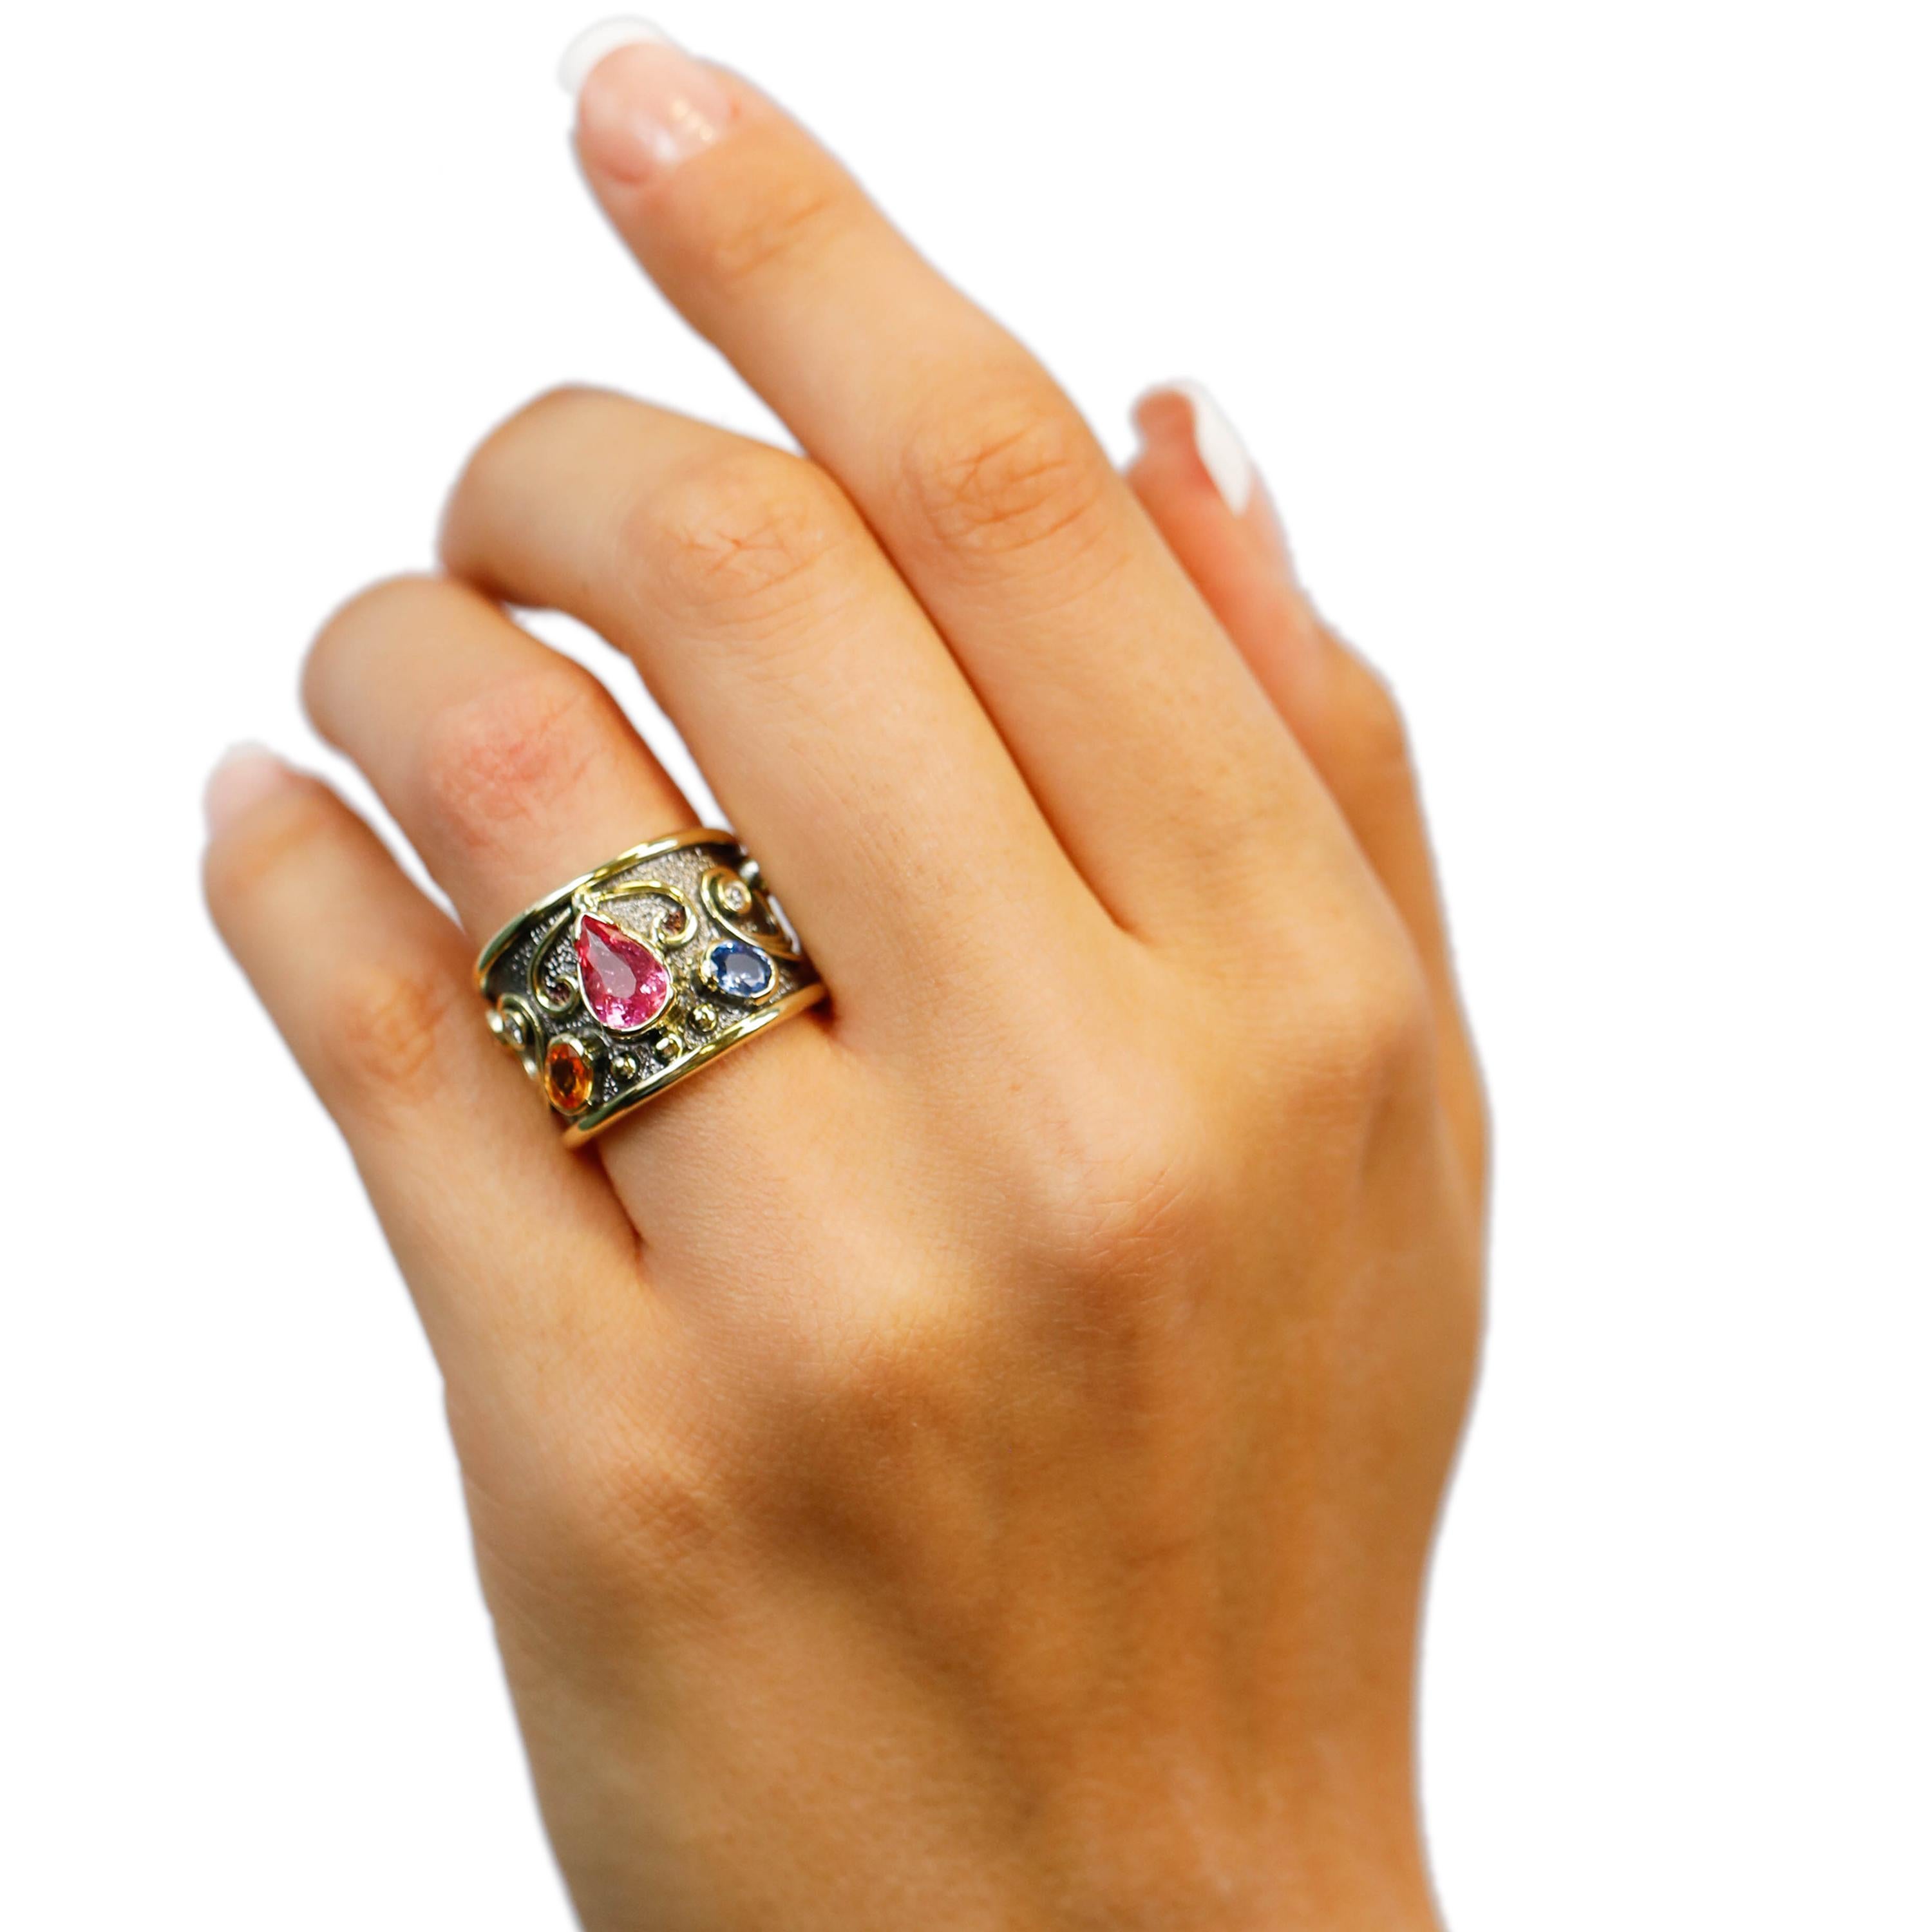 Rosa Turmalin Saphir Diamant 18k Gelbgold Zigarre Band Ring US Größe 6

Gefertigt in 18 kt Gelbgold, zeigt dieses einzigartige Design einen weißen Diamanten 0,30 TCW Rund geformte Diamanten, in Gelbgold, feine Birne Form faszinierenden 2,5 ct rosa